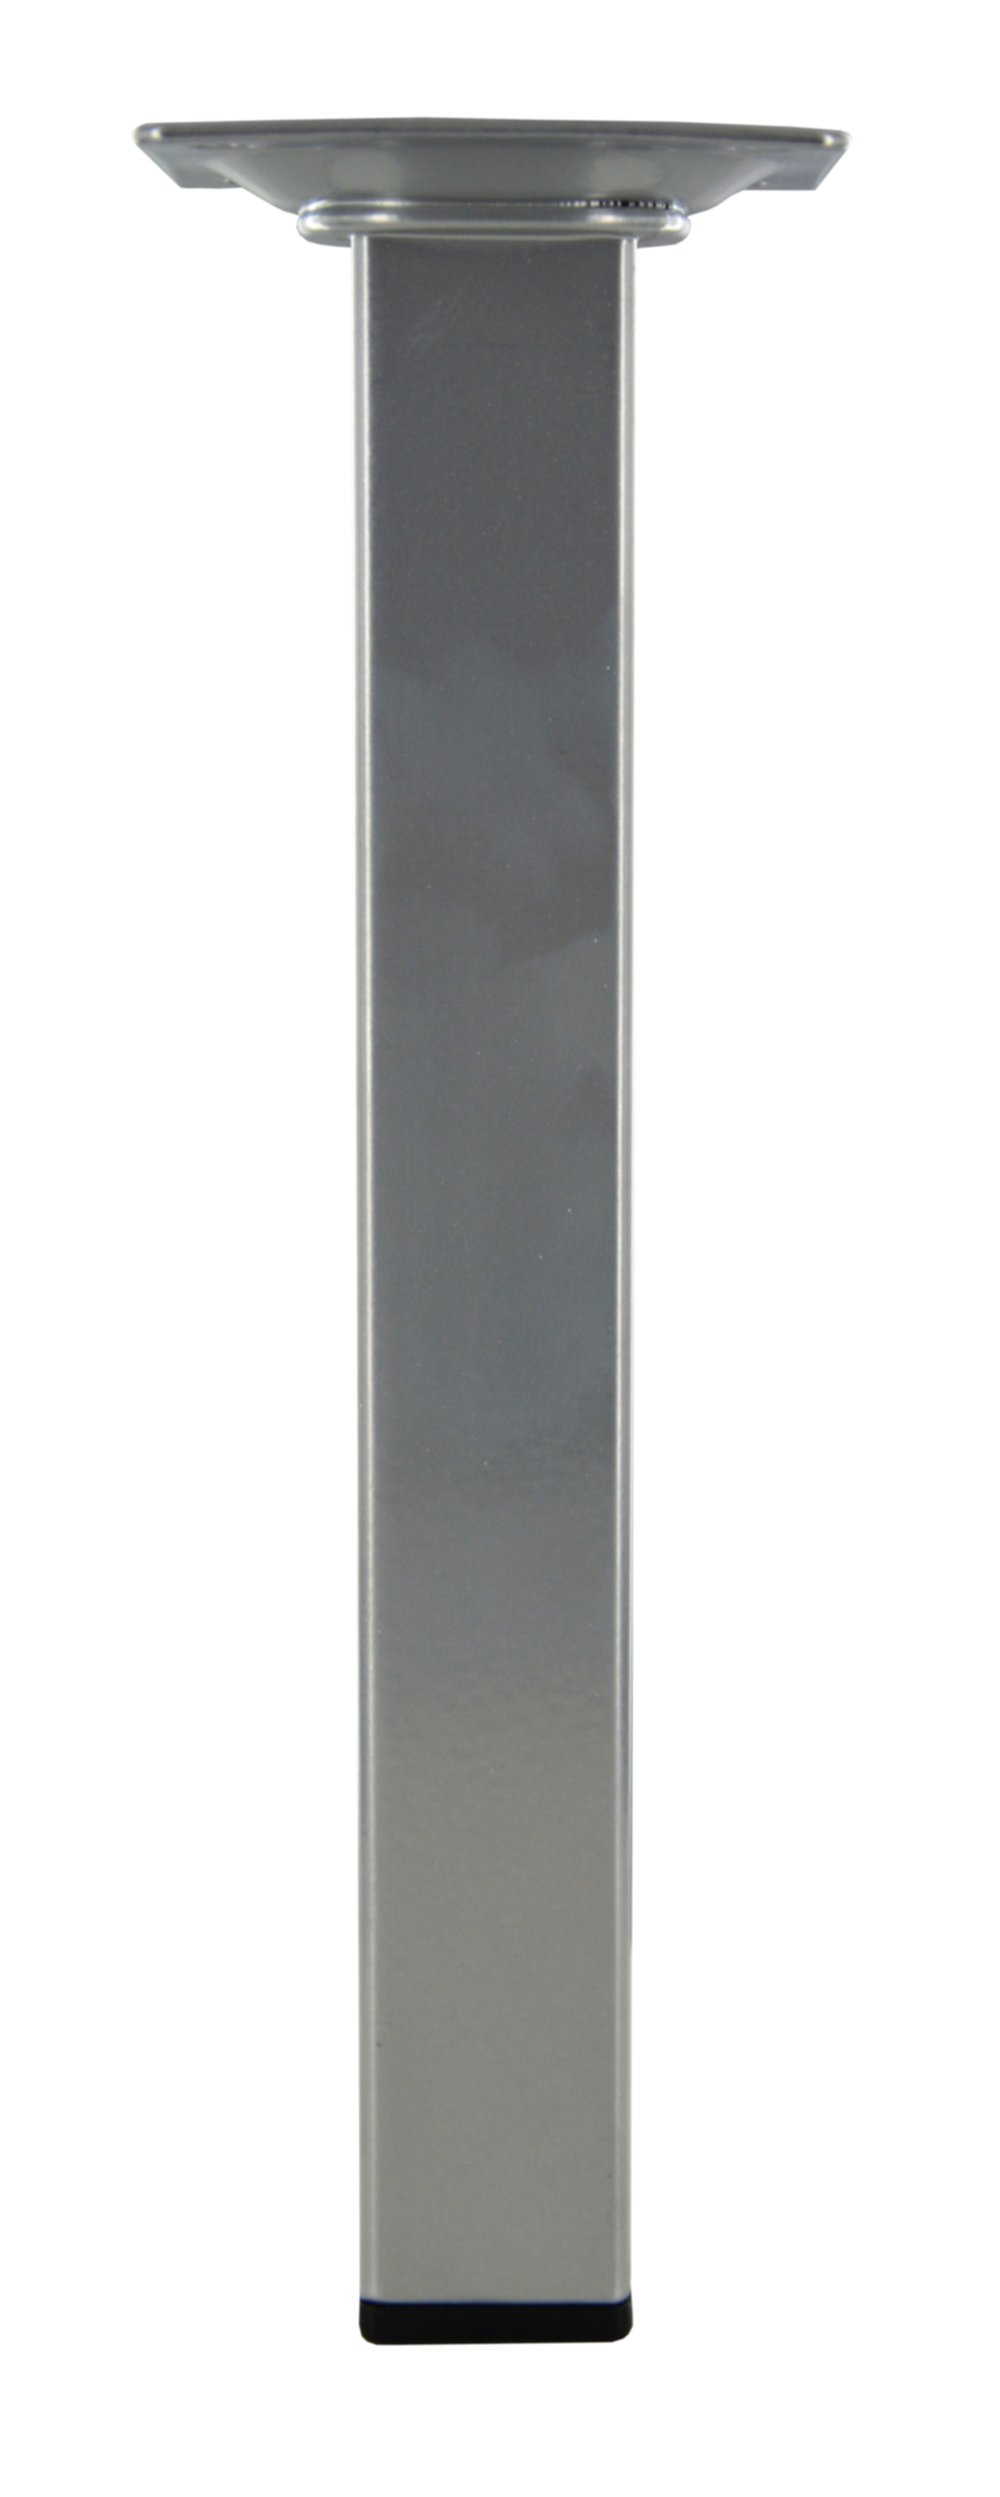 Pied carré acier gris alu, H.200mm 25x25mm - CIME